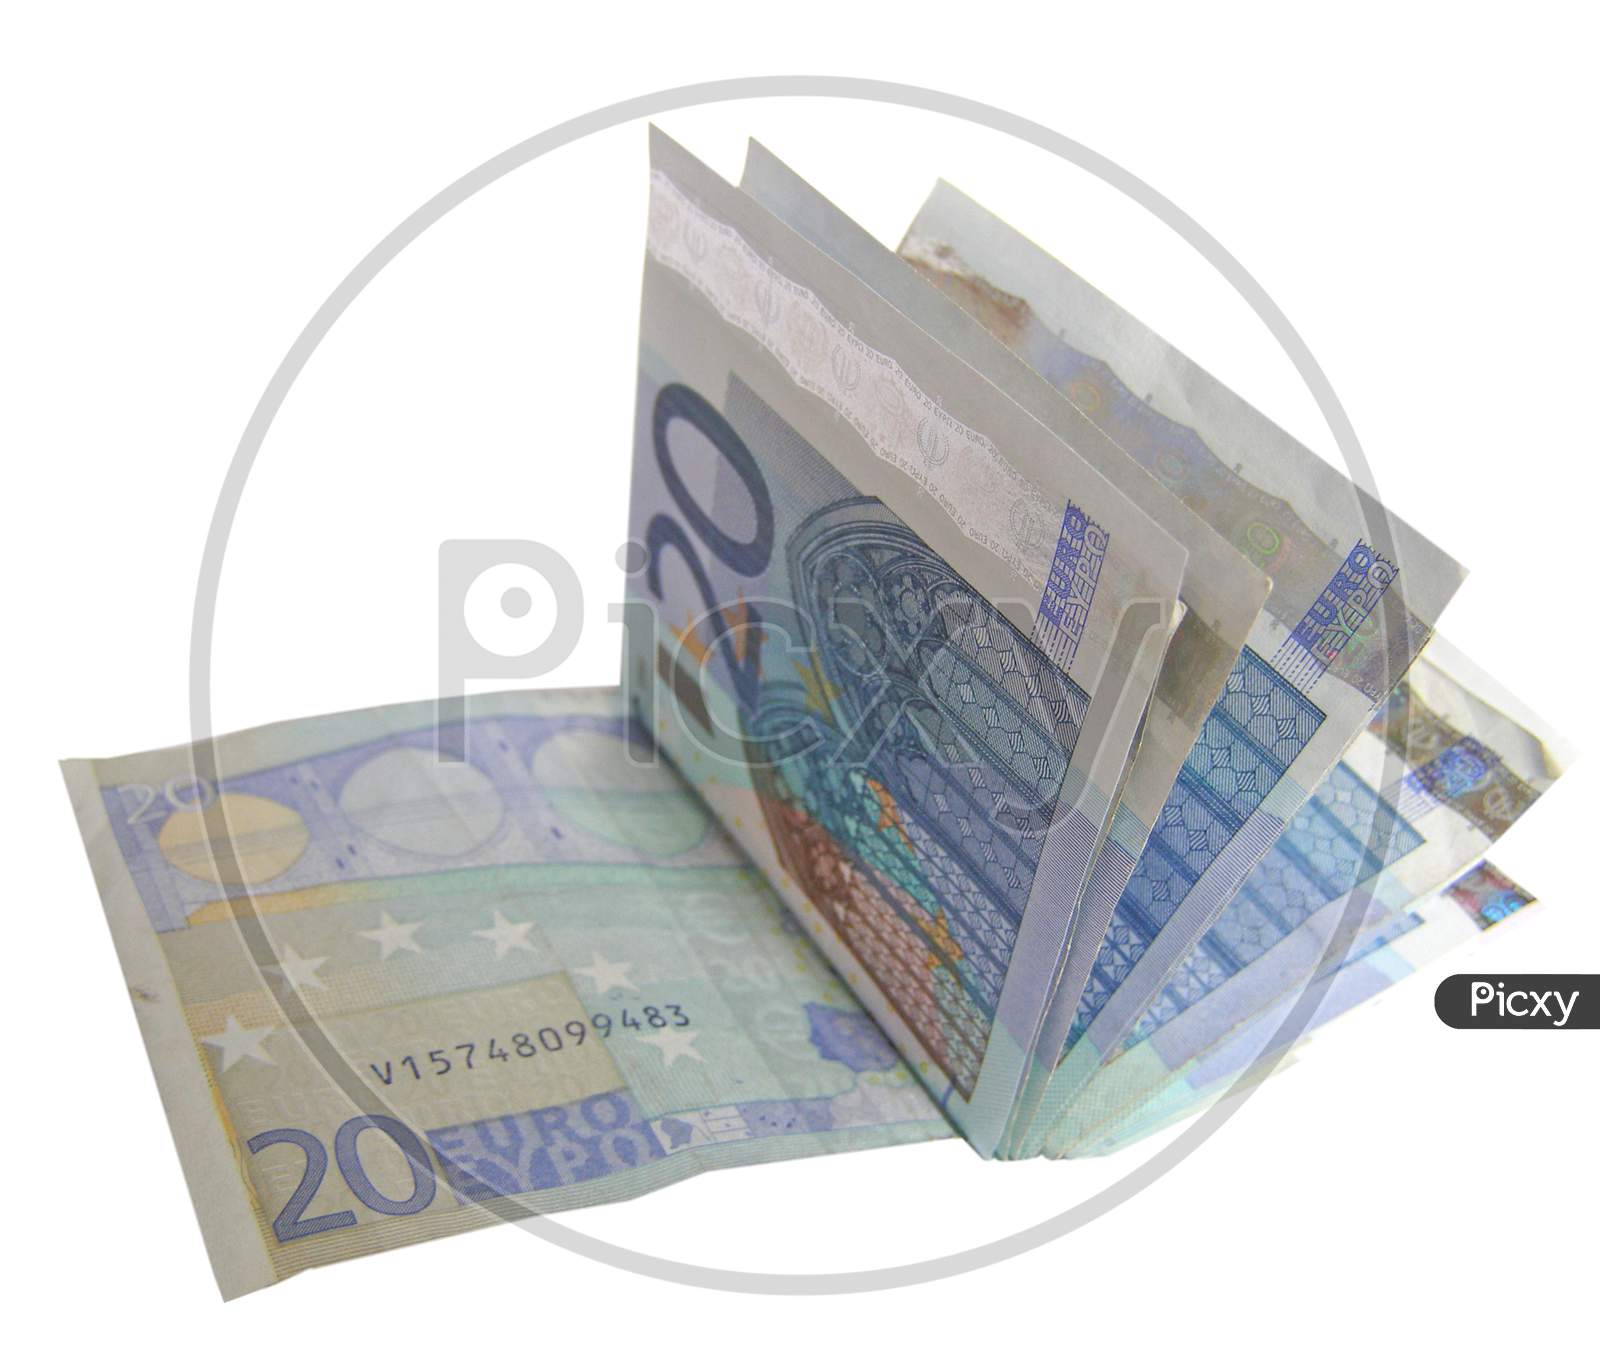 500 Euro Note, European Union